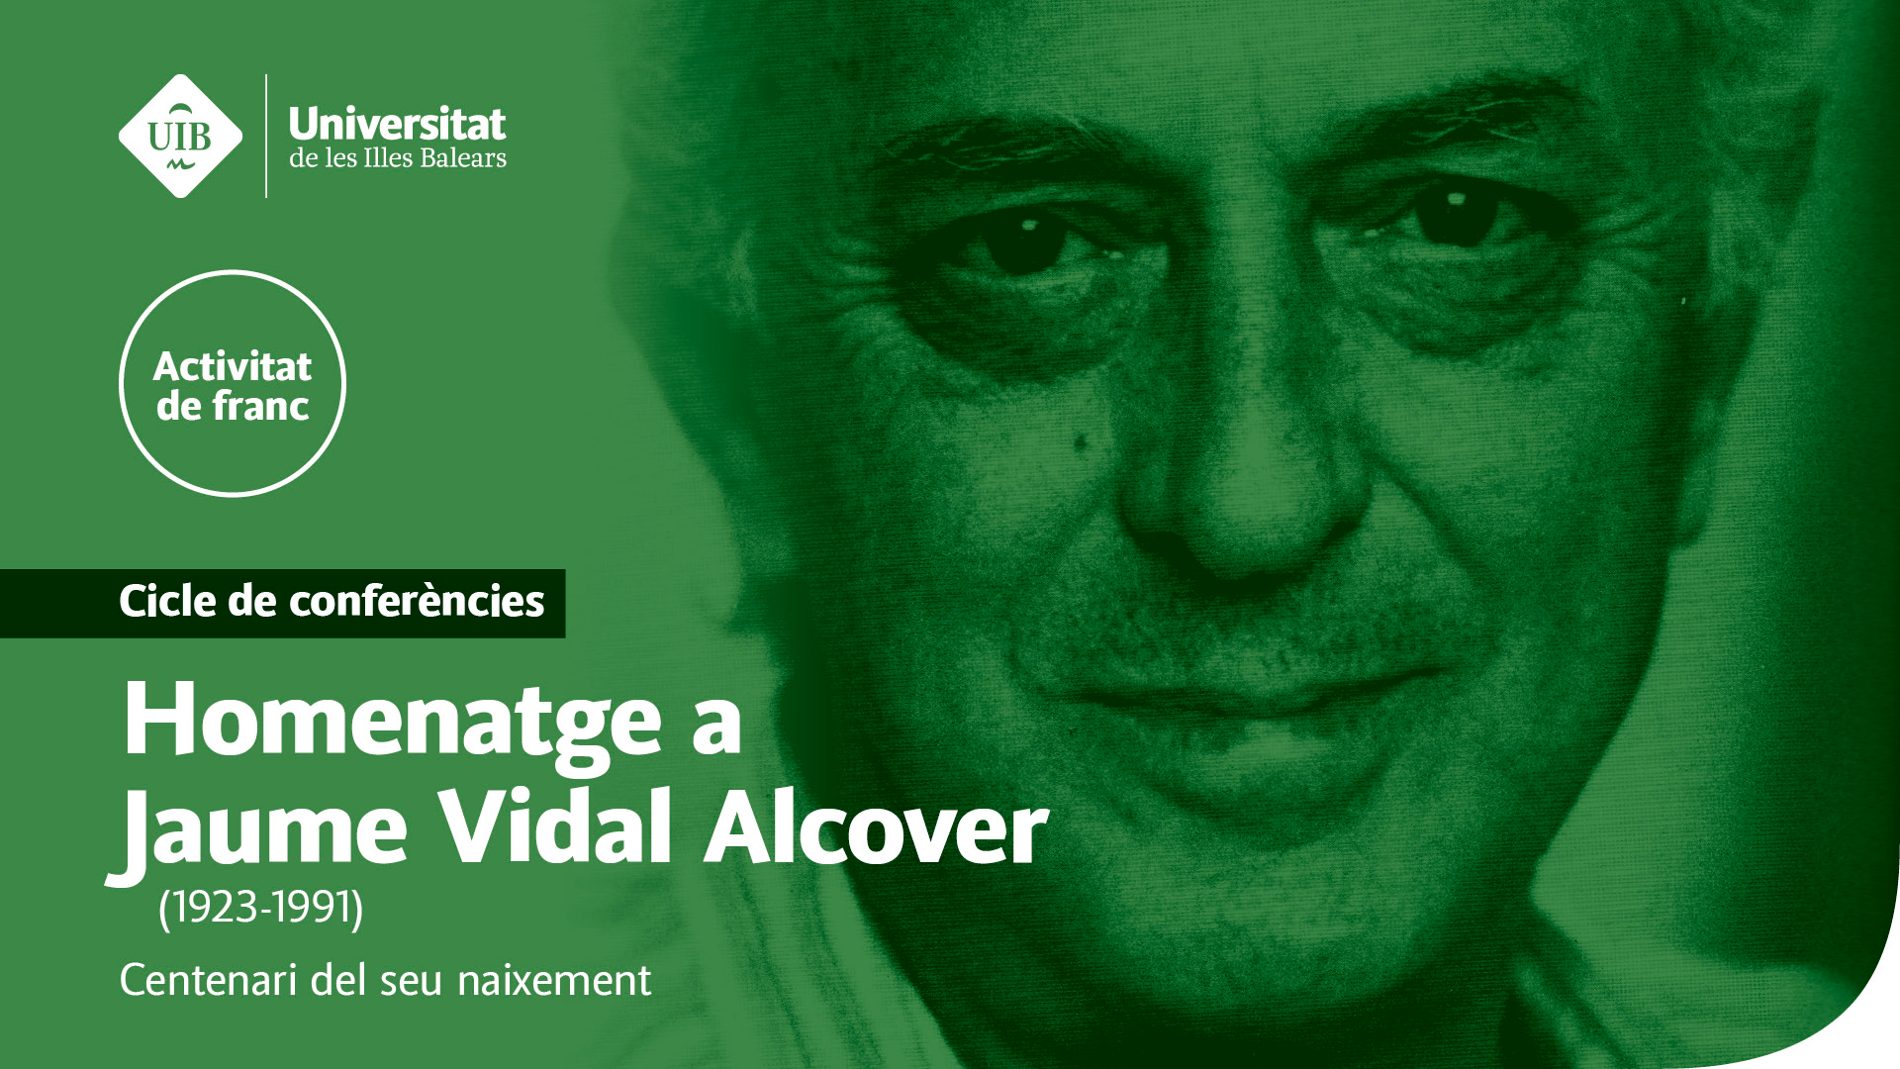 La UIB commemora el centenari del naixement de Jaume Vidal Alcover